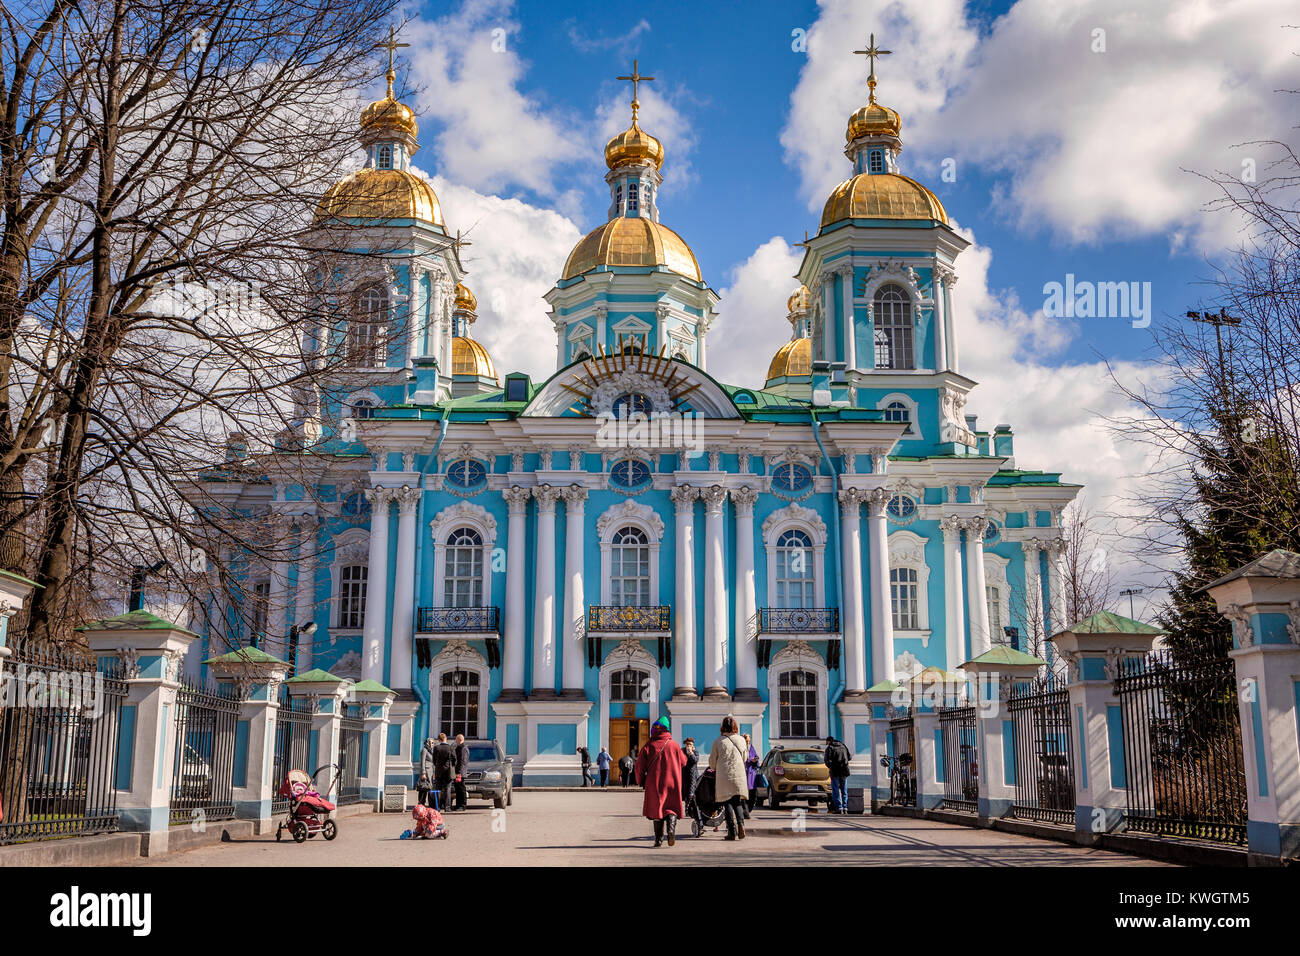 Cathédrale Saint-nicolas (Никольский морской Naval собор, Nikolskiy morskoy sobor) est une cathédrale orthodoxe Baroque majeur dans la partie occidentale de l'Europe centrale Banque D'Images